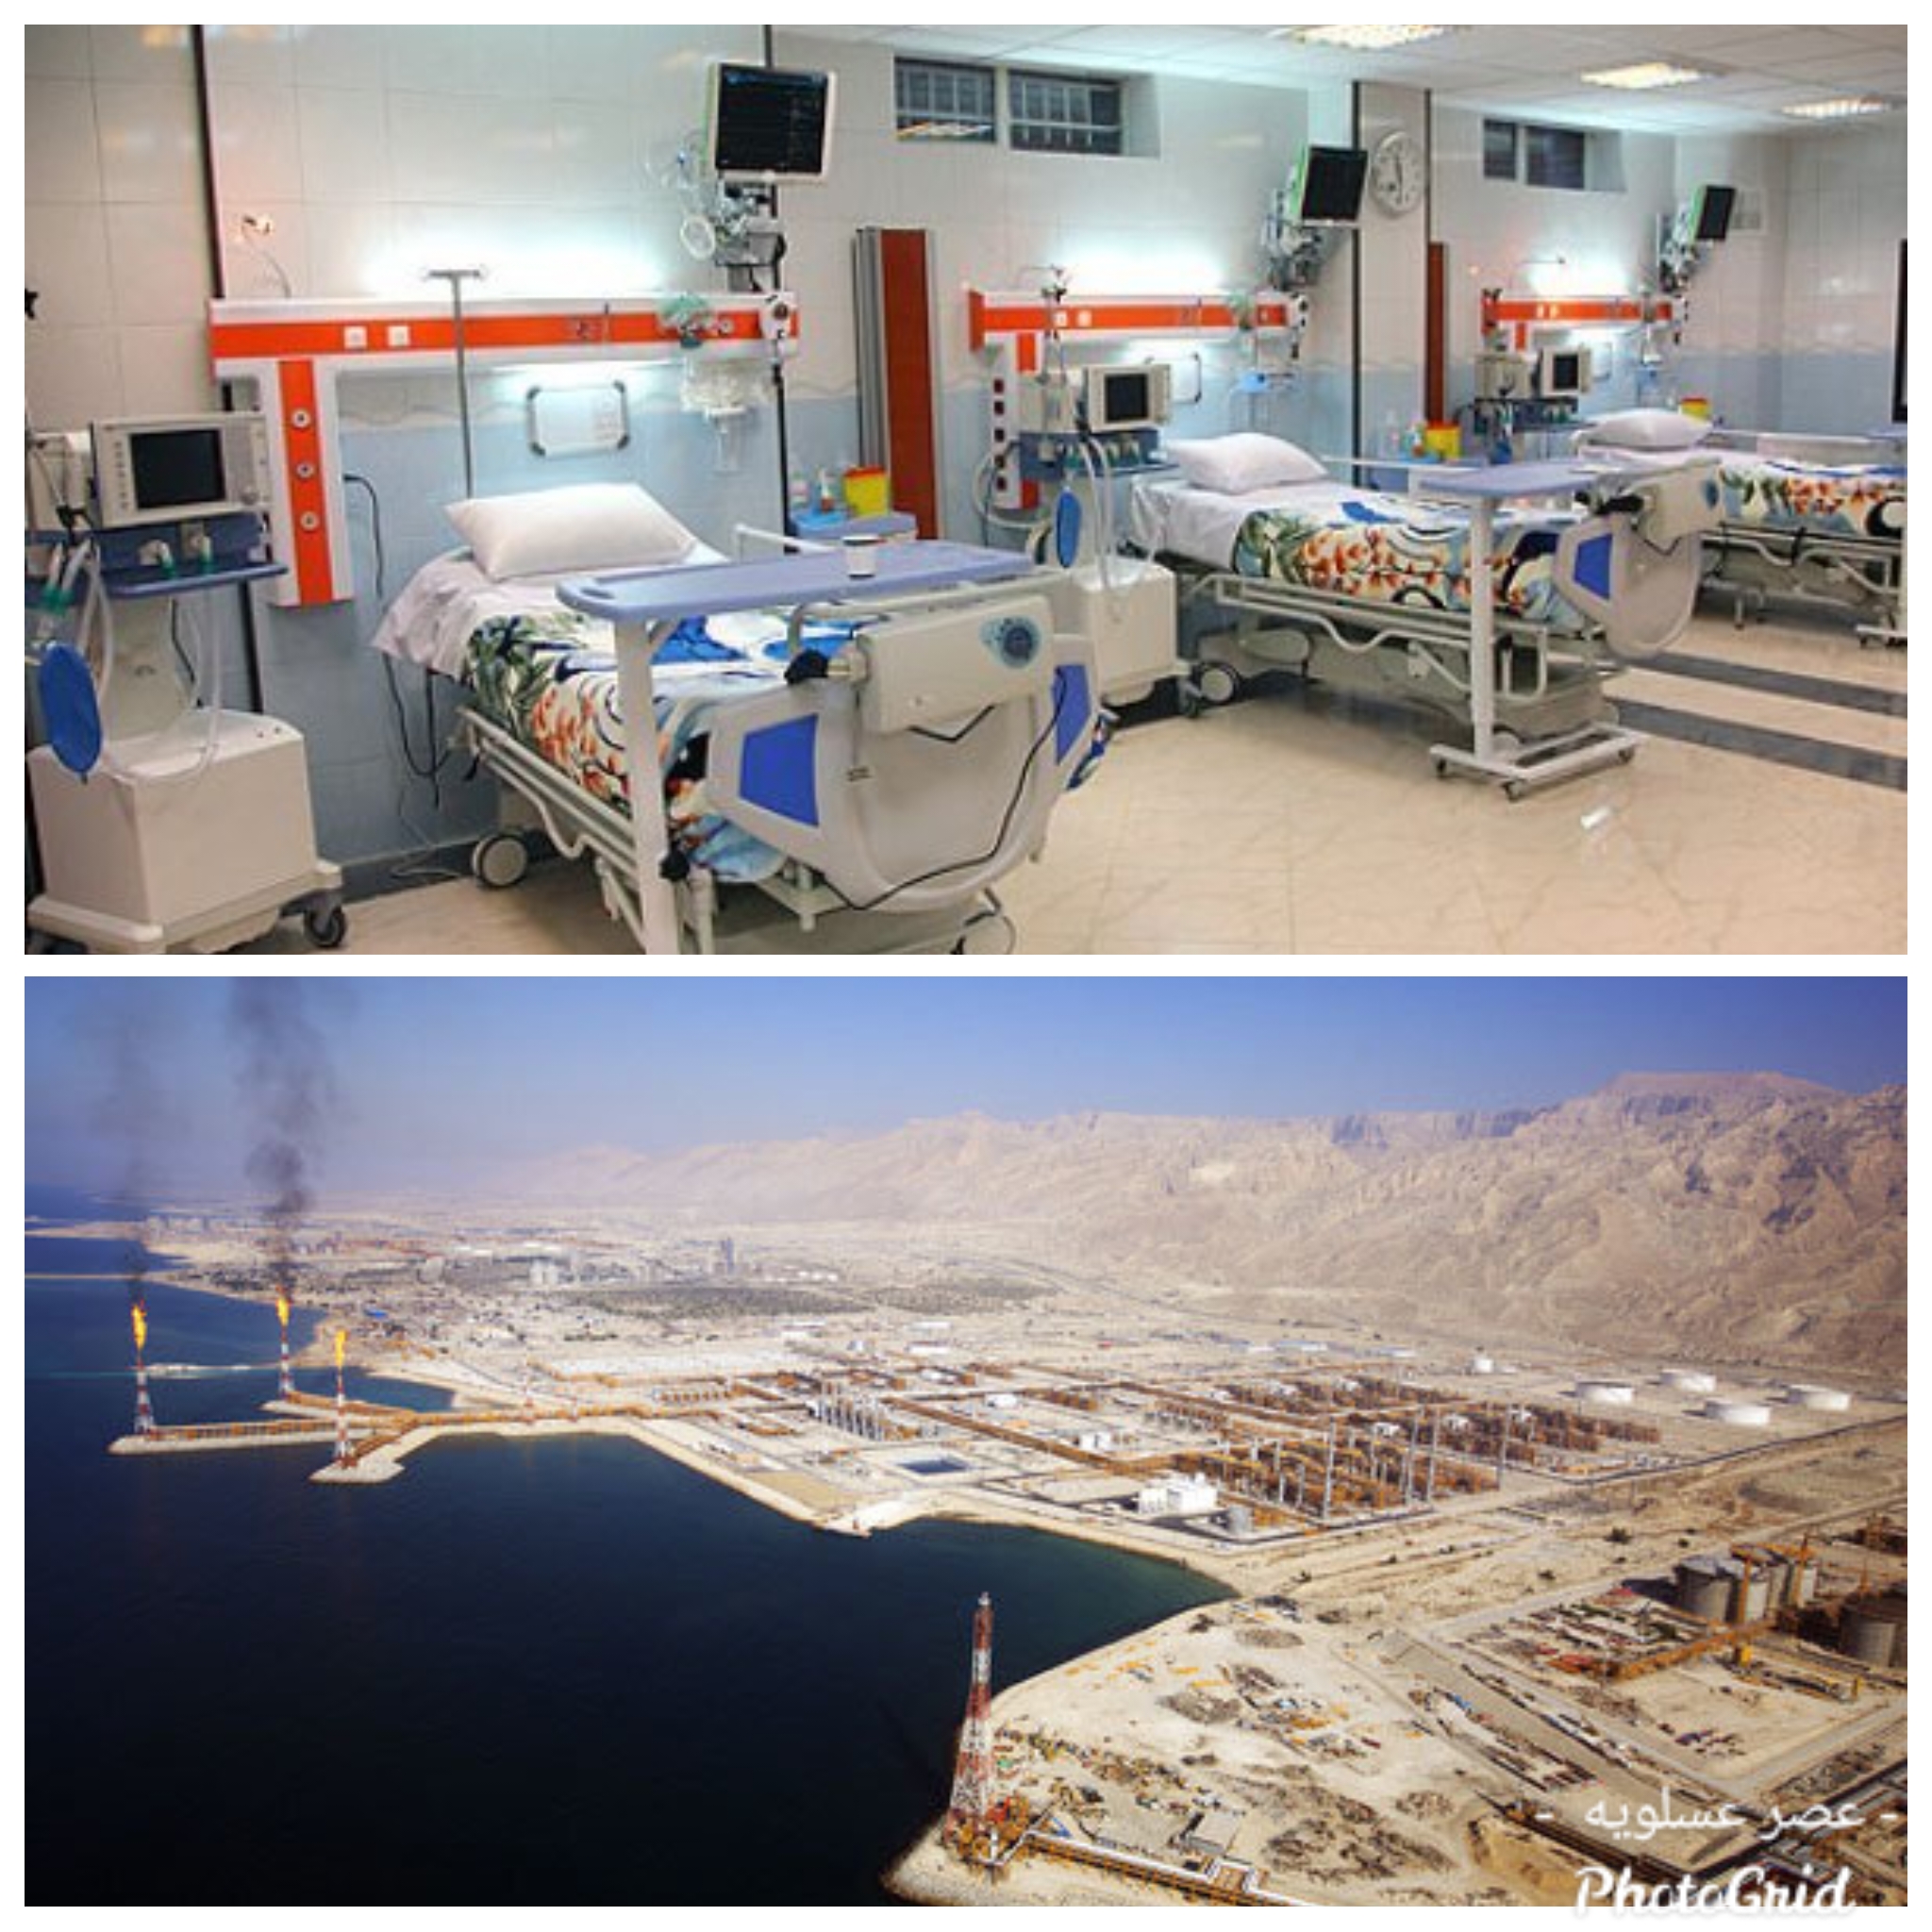  مشکلات و چالش‌هایی در حوزه درمان در عسلویه پای لنگ درمان در پارس جنوبی/ عسلویه بیمارستان مجهز می‌خواهد  